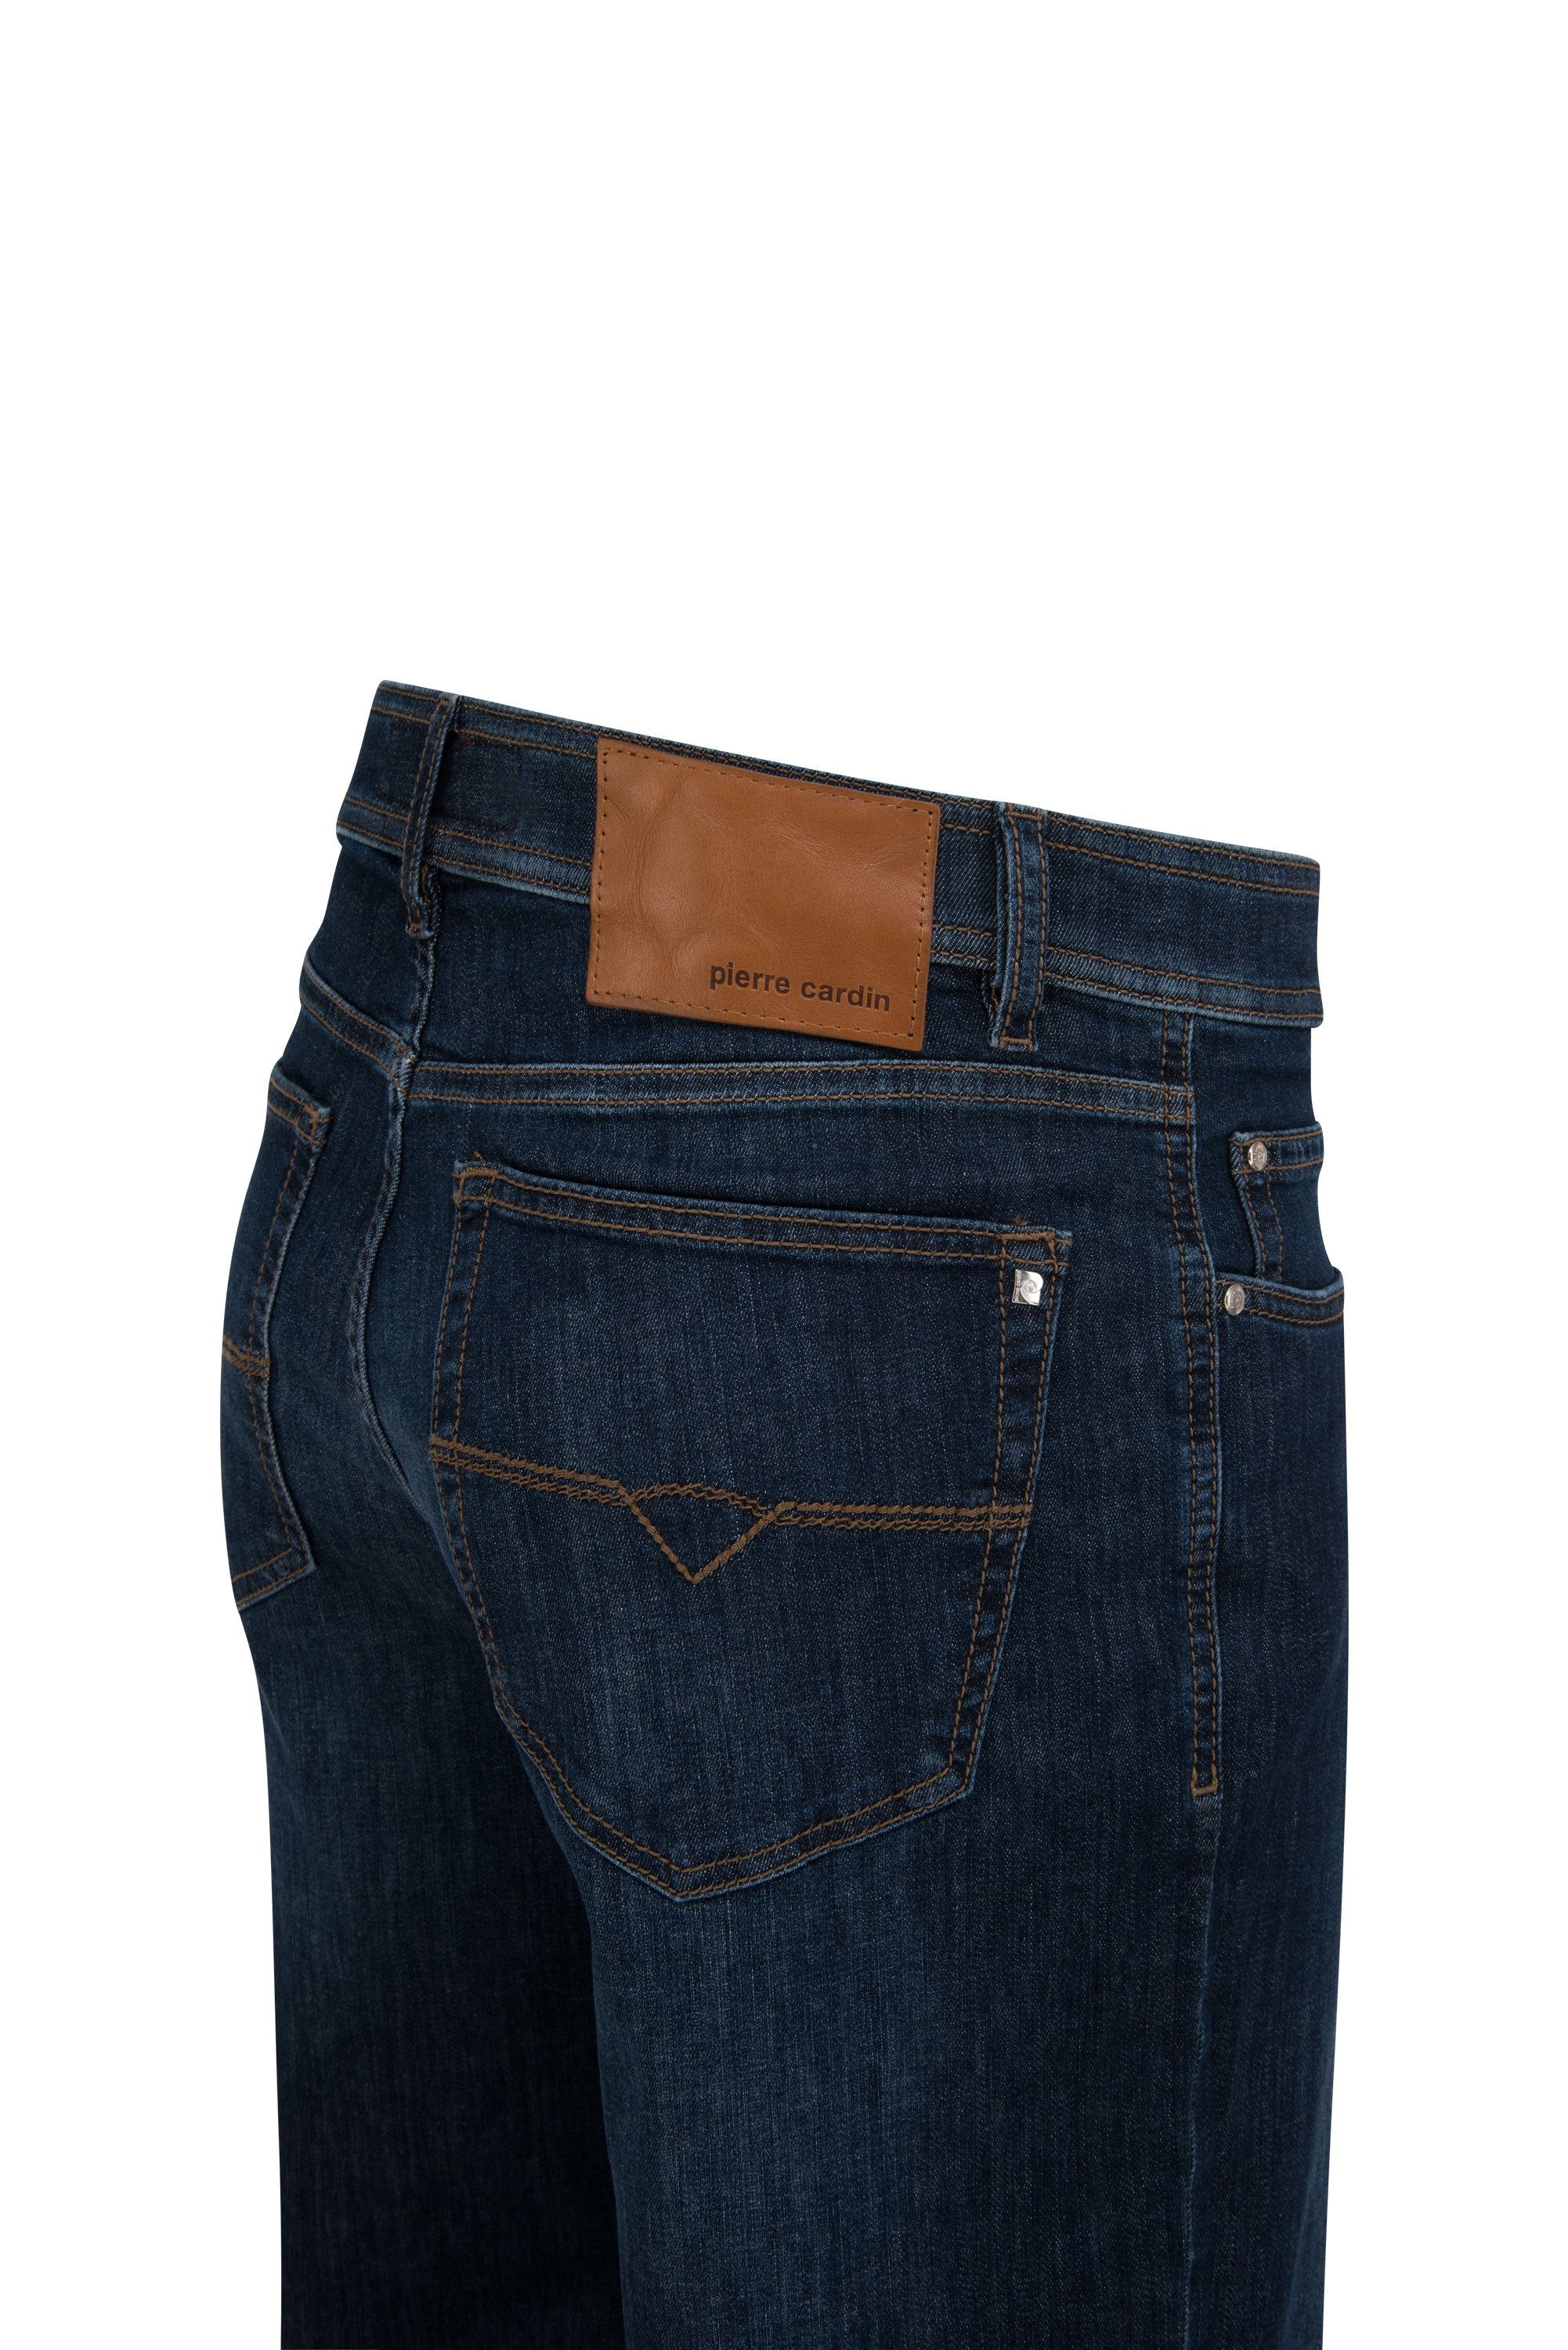 Pierre Cardin 5-Pocket-Jeans rinsed PREMIUM blue PIERRE CARDIN dark DIJON 3231 - INDIGO 7011.11